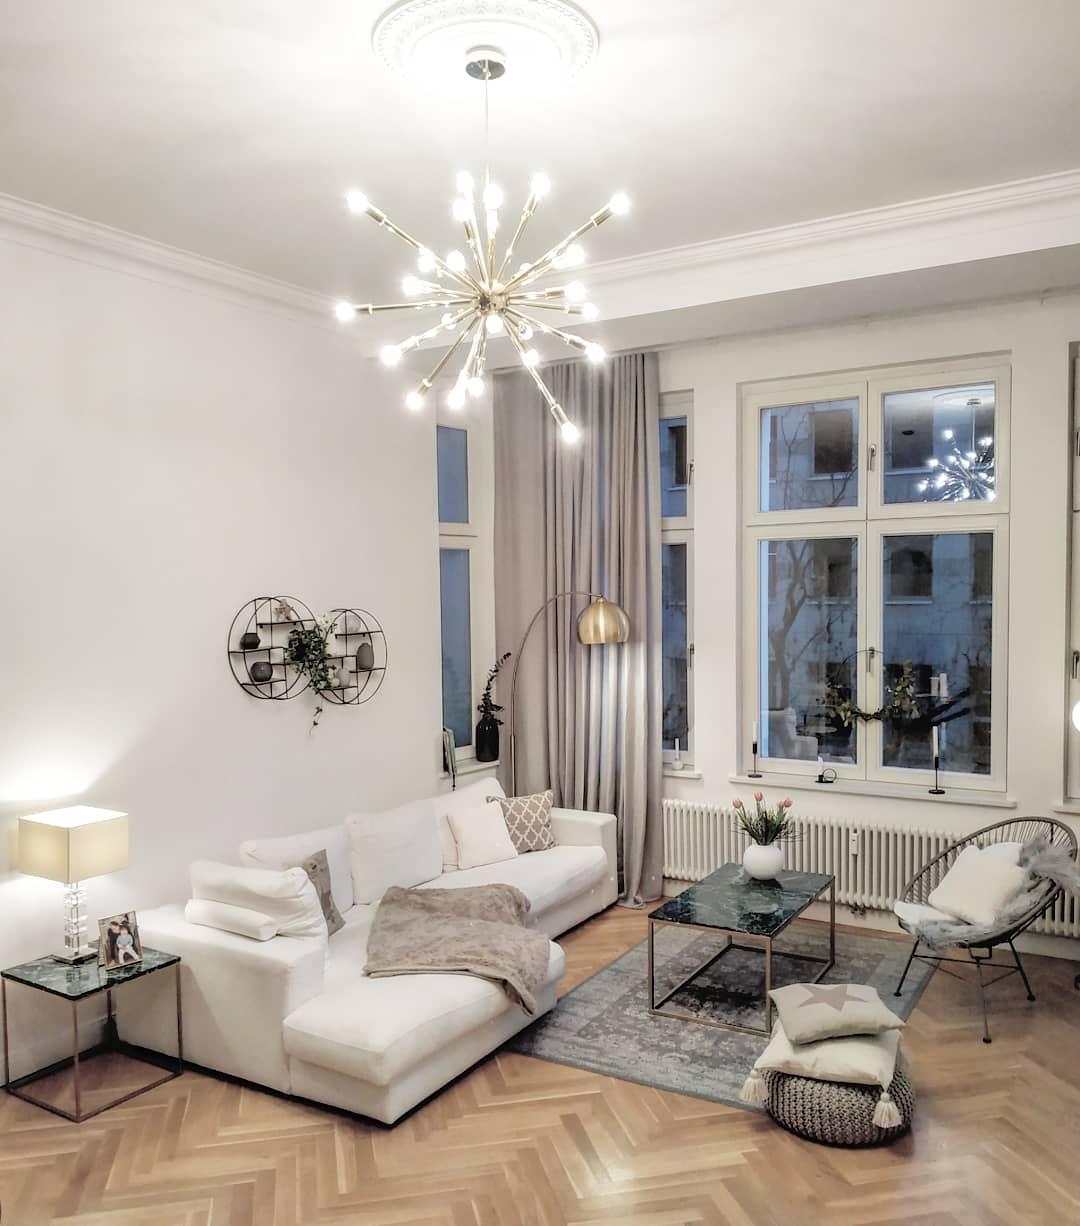 #skandistyle #wohnzimmerideen #einrichten #wohnzimmer #interiordesign